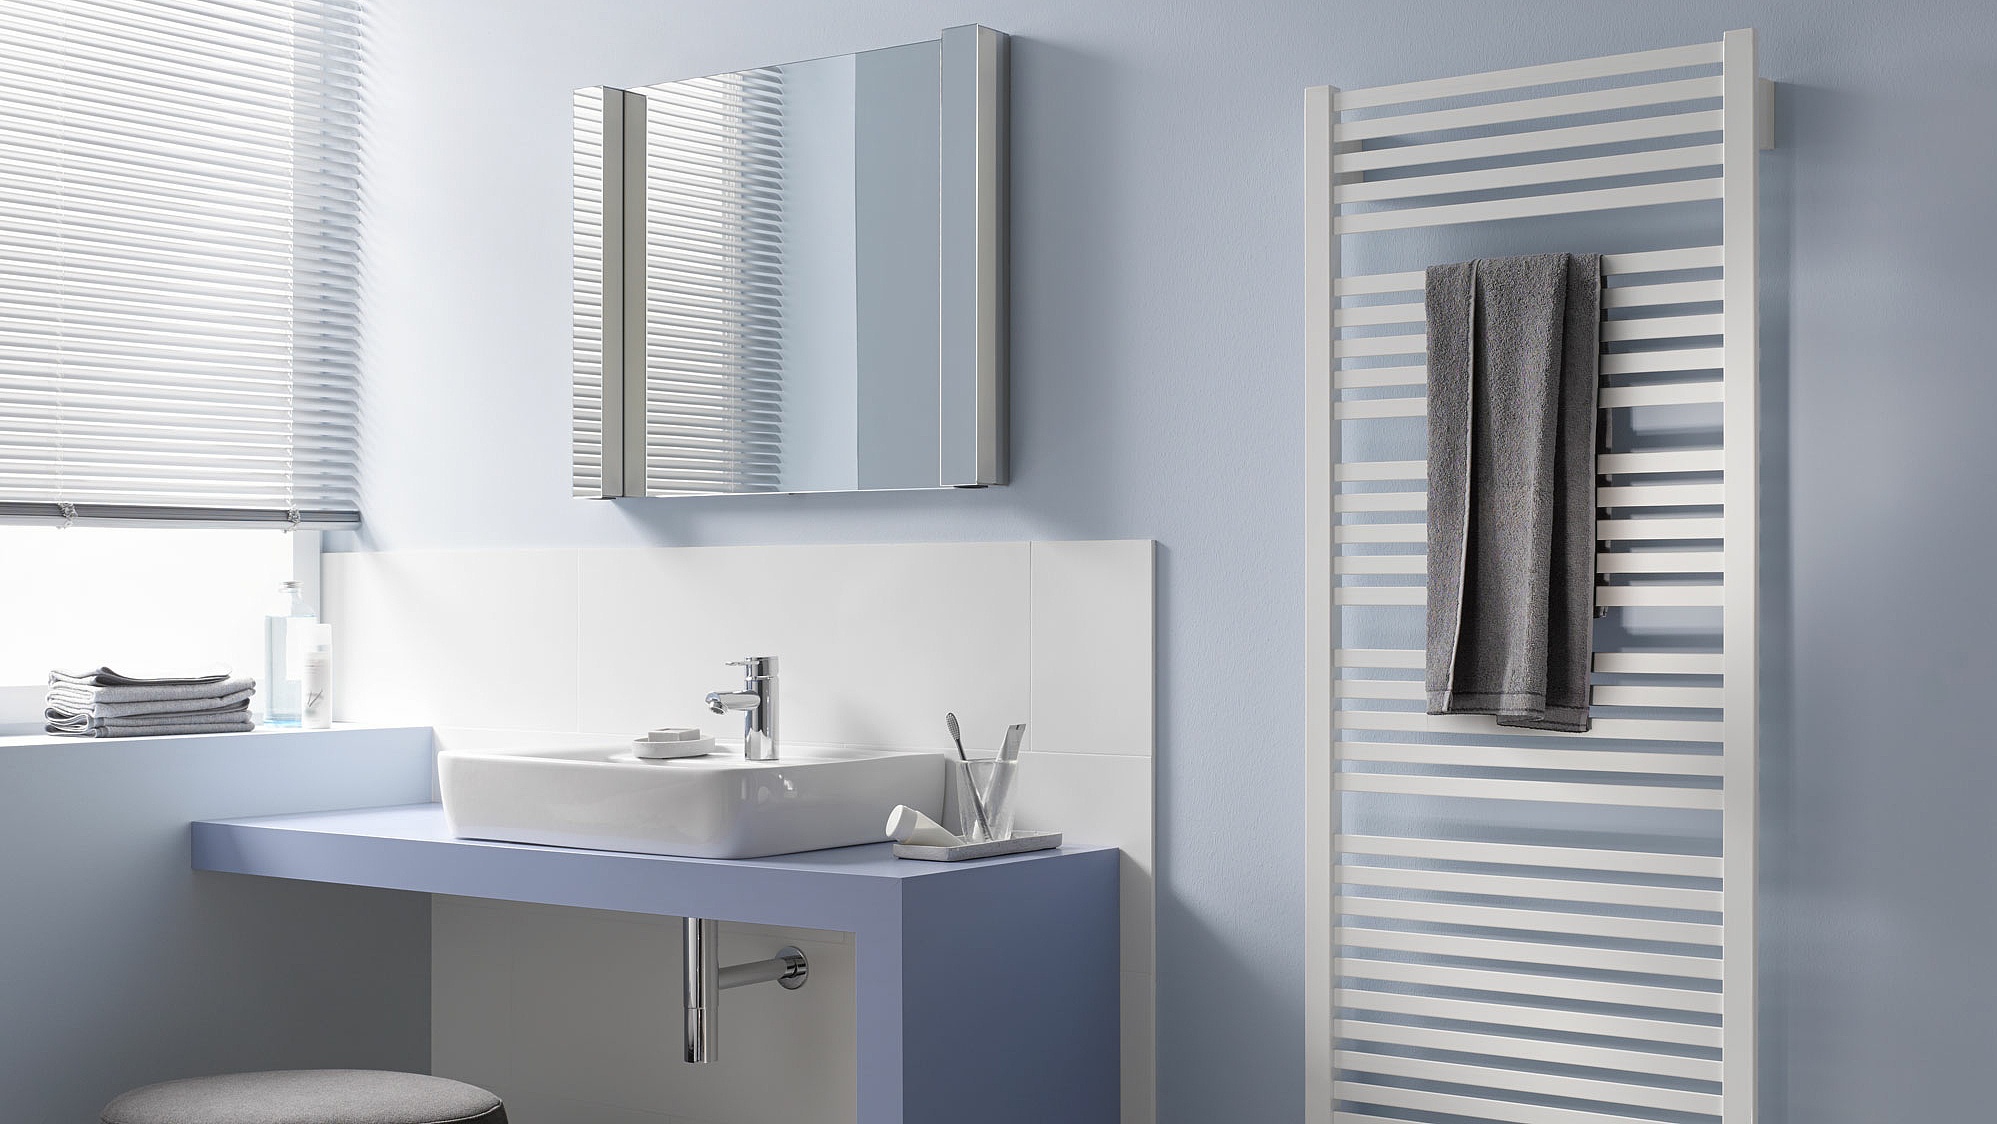 Grzejniki dekoracyjne i łazienkowe Kermi Geneo quadris oferują dużą swobodę przy projektowaniu i wykonywaniu instalacji.